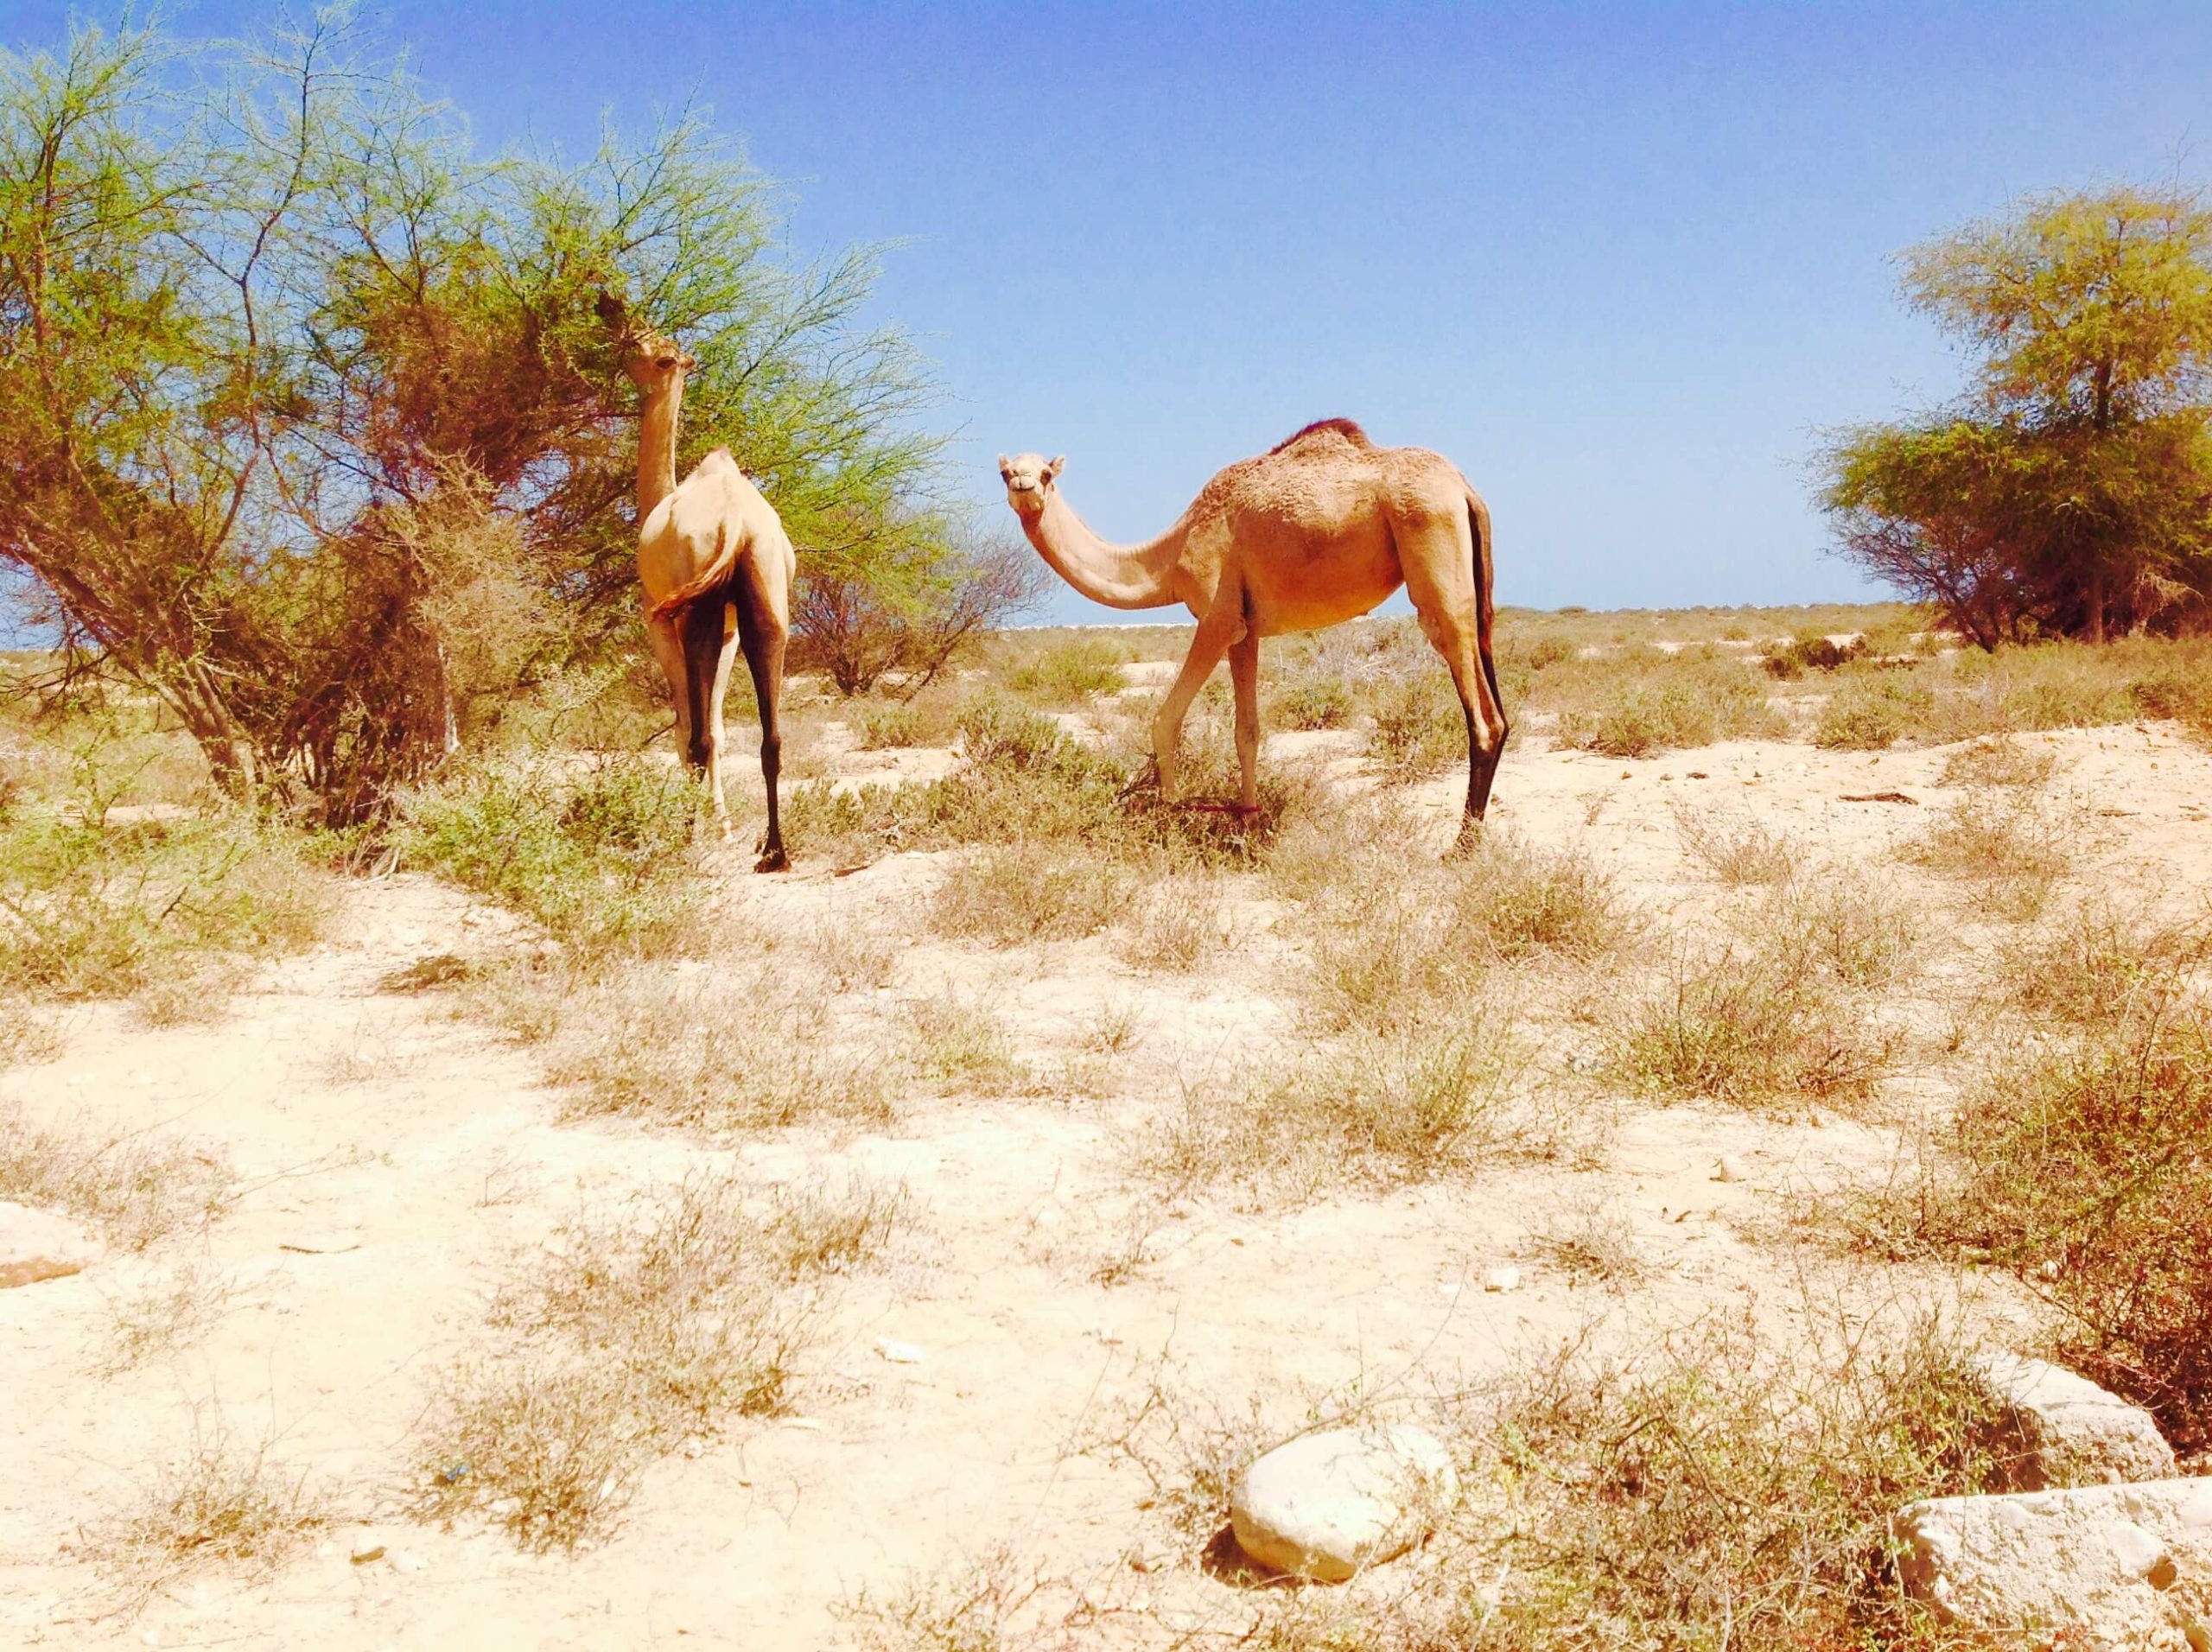 Wadi Shab Camels